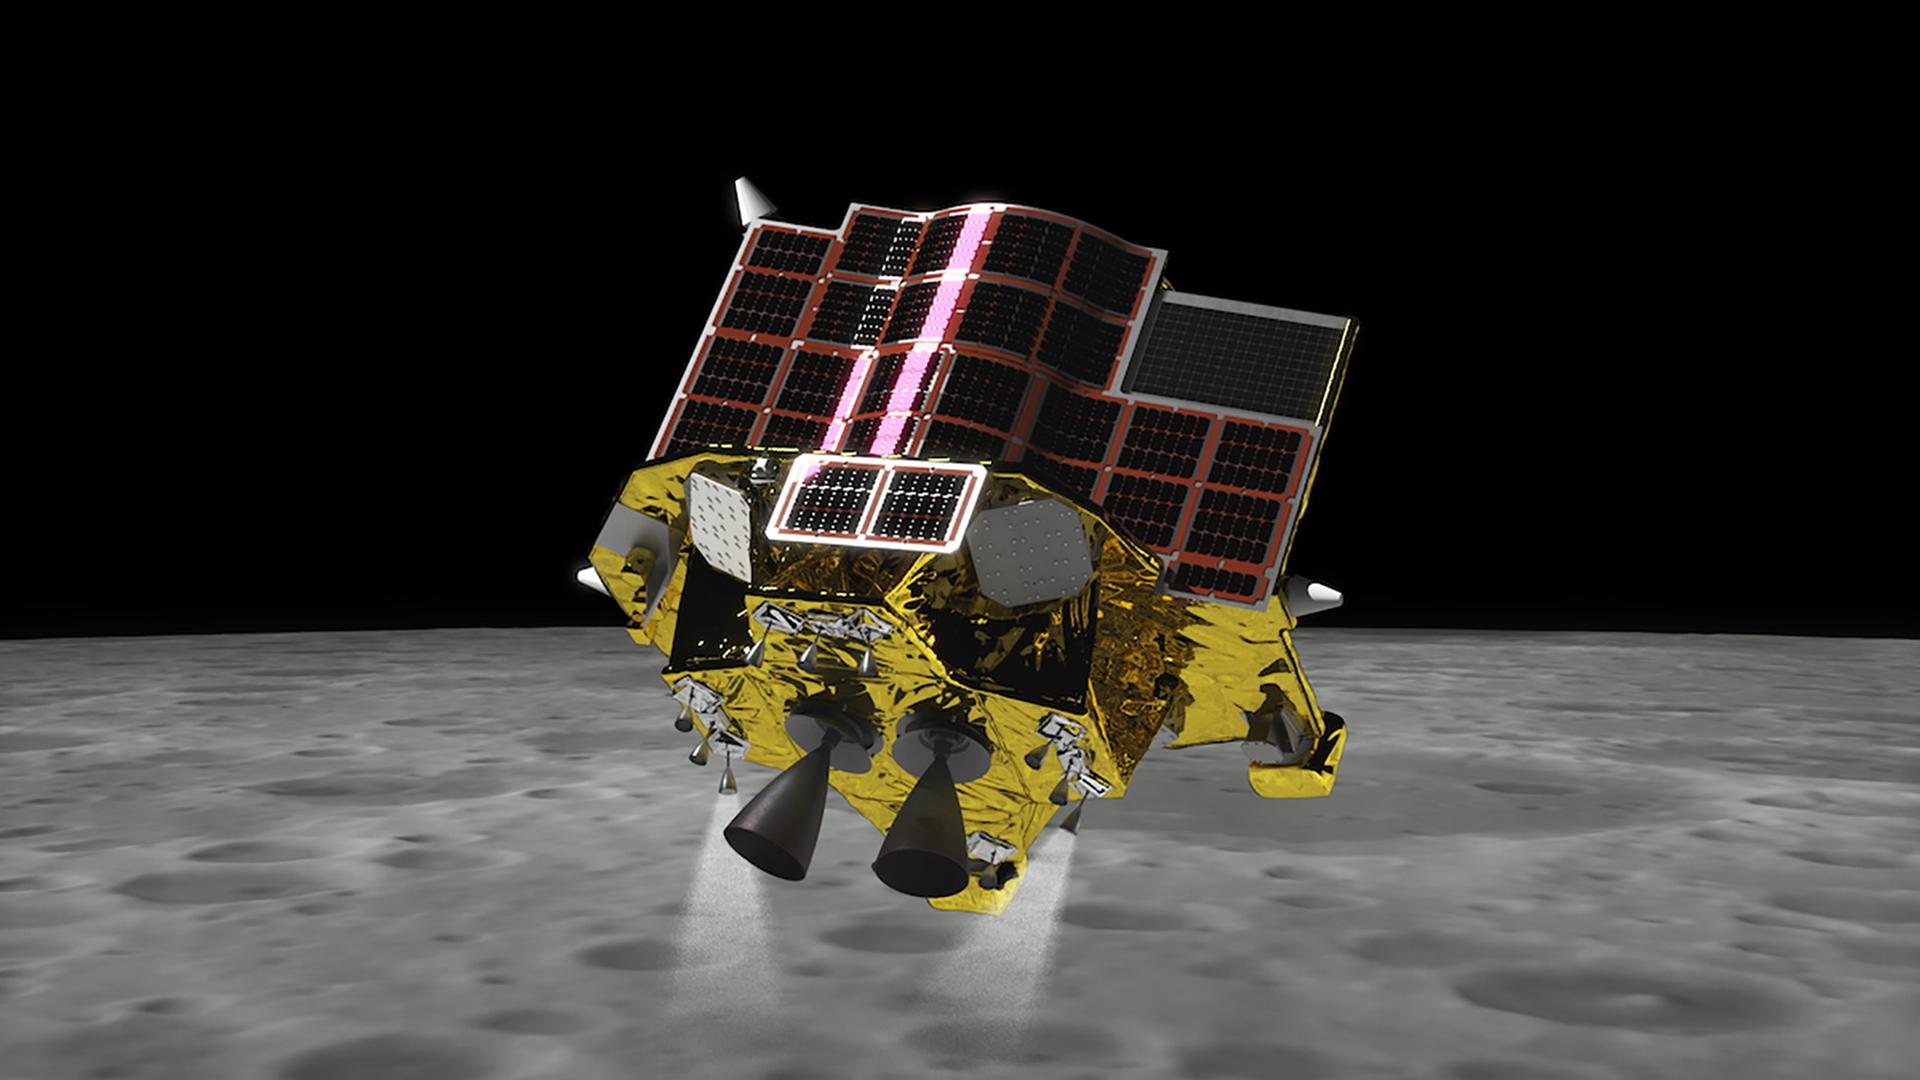 Die japanische Sonde "SLIM" während der Mondlandung